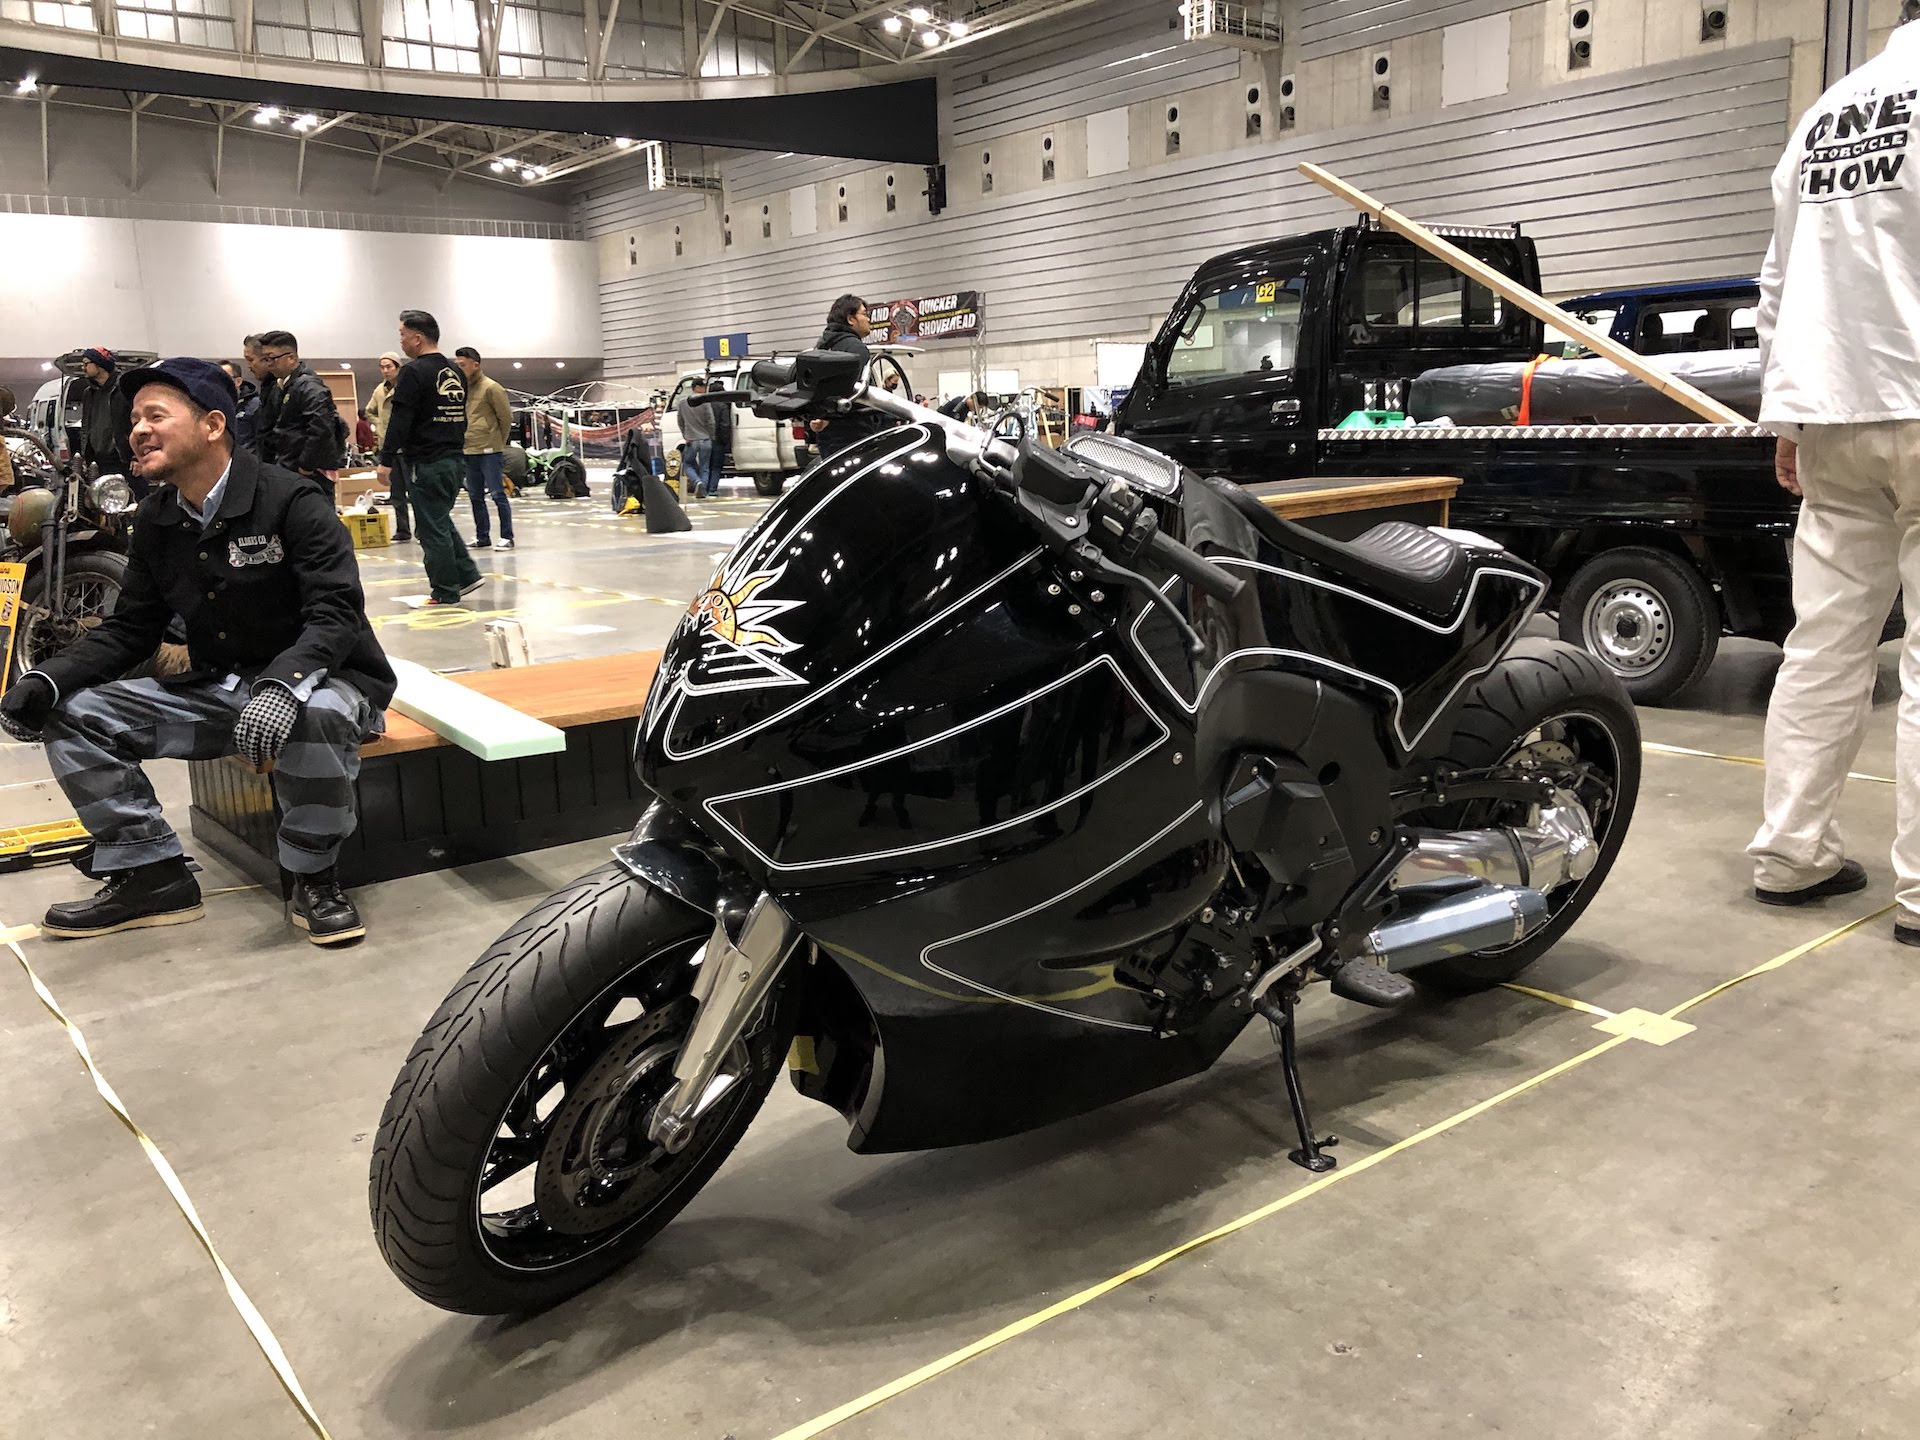 Les plus belles préparations moto - Page 24 Yokohama-Hot-Rod-Show-2019__4530